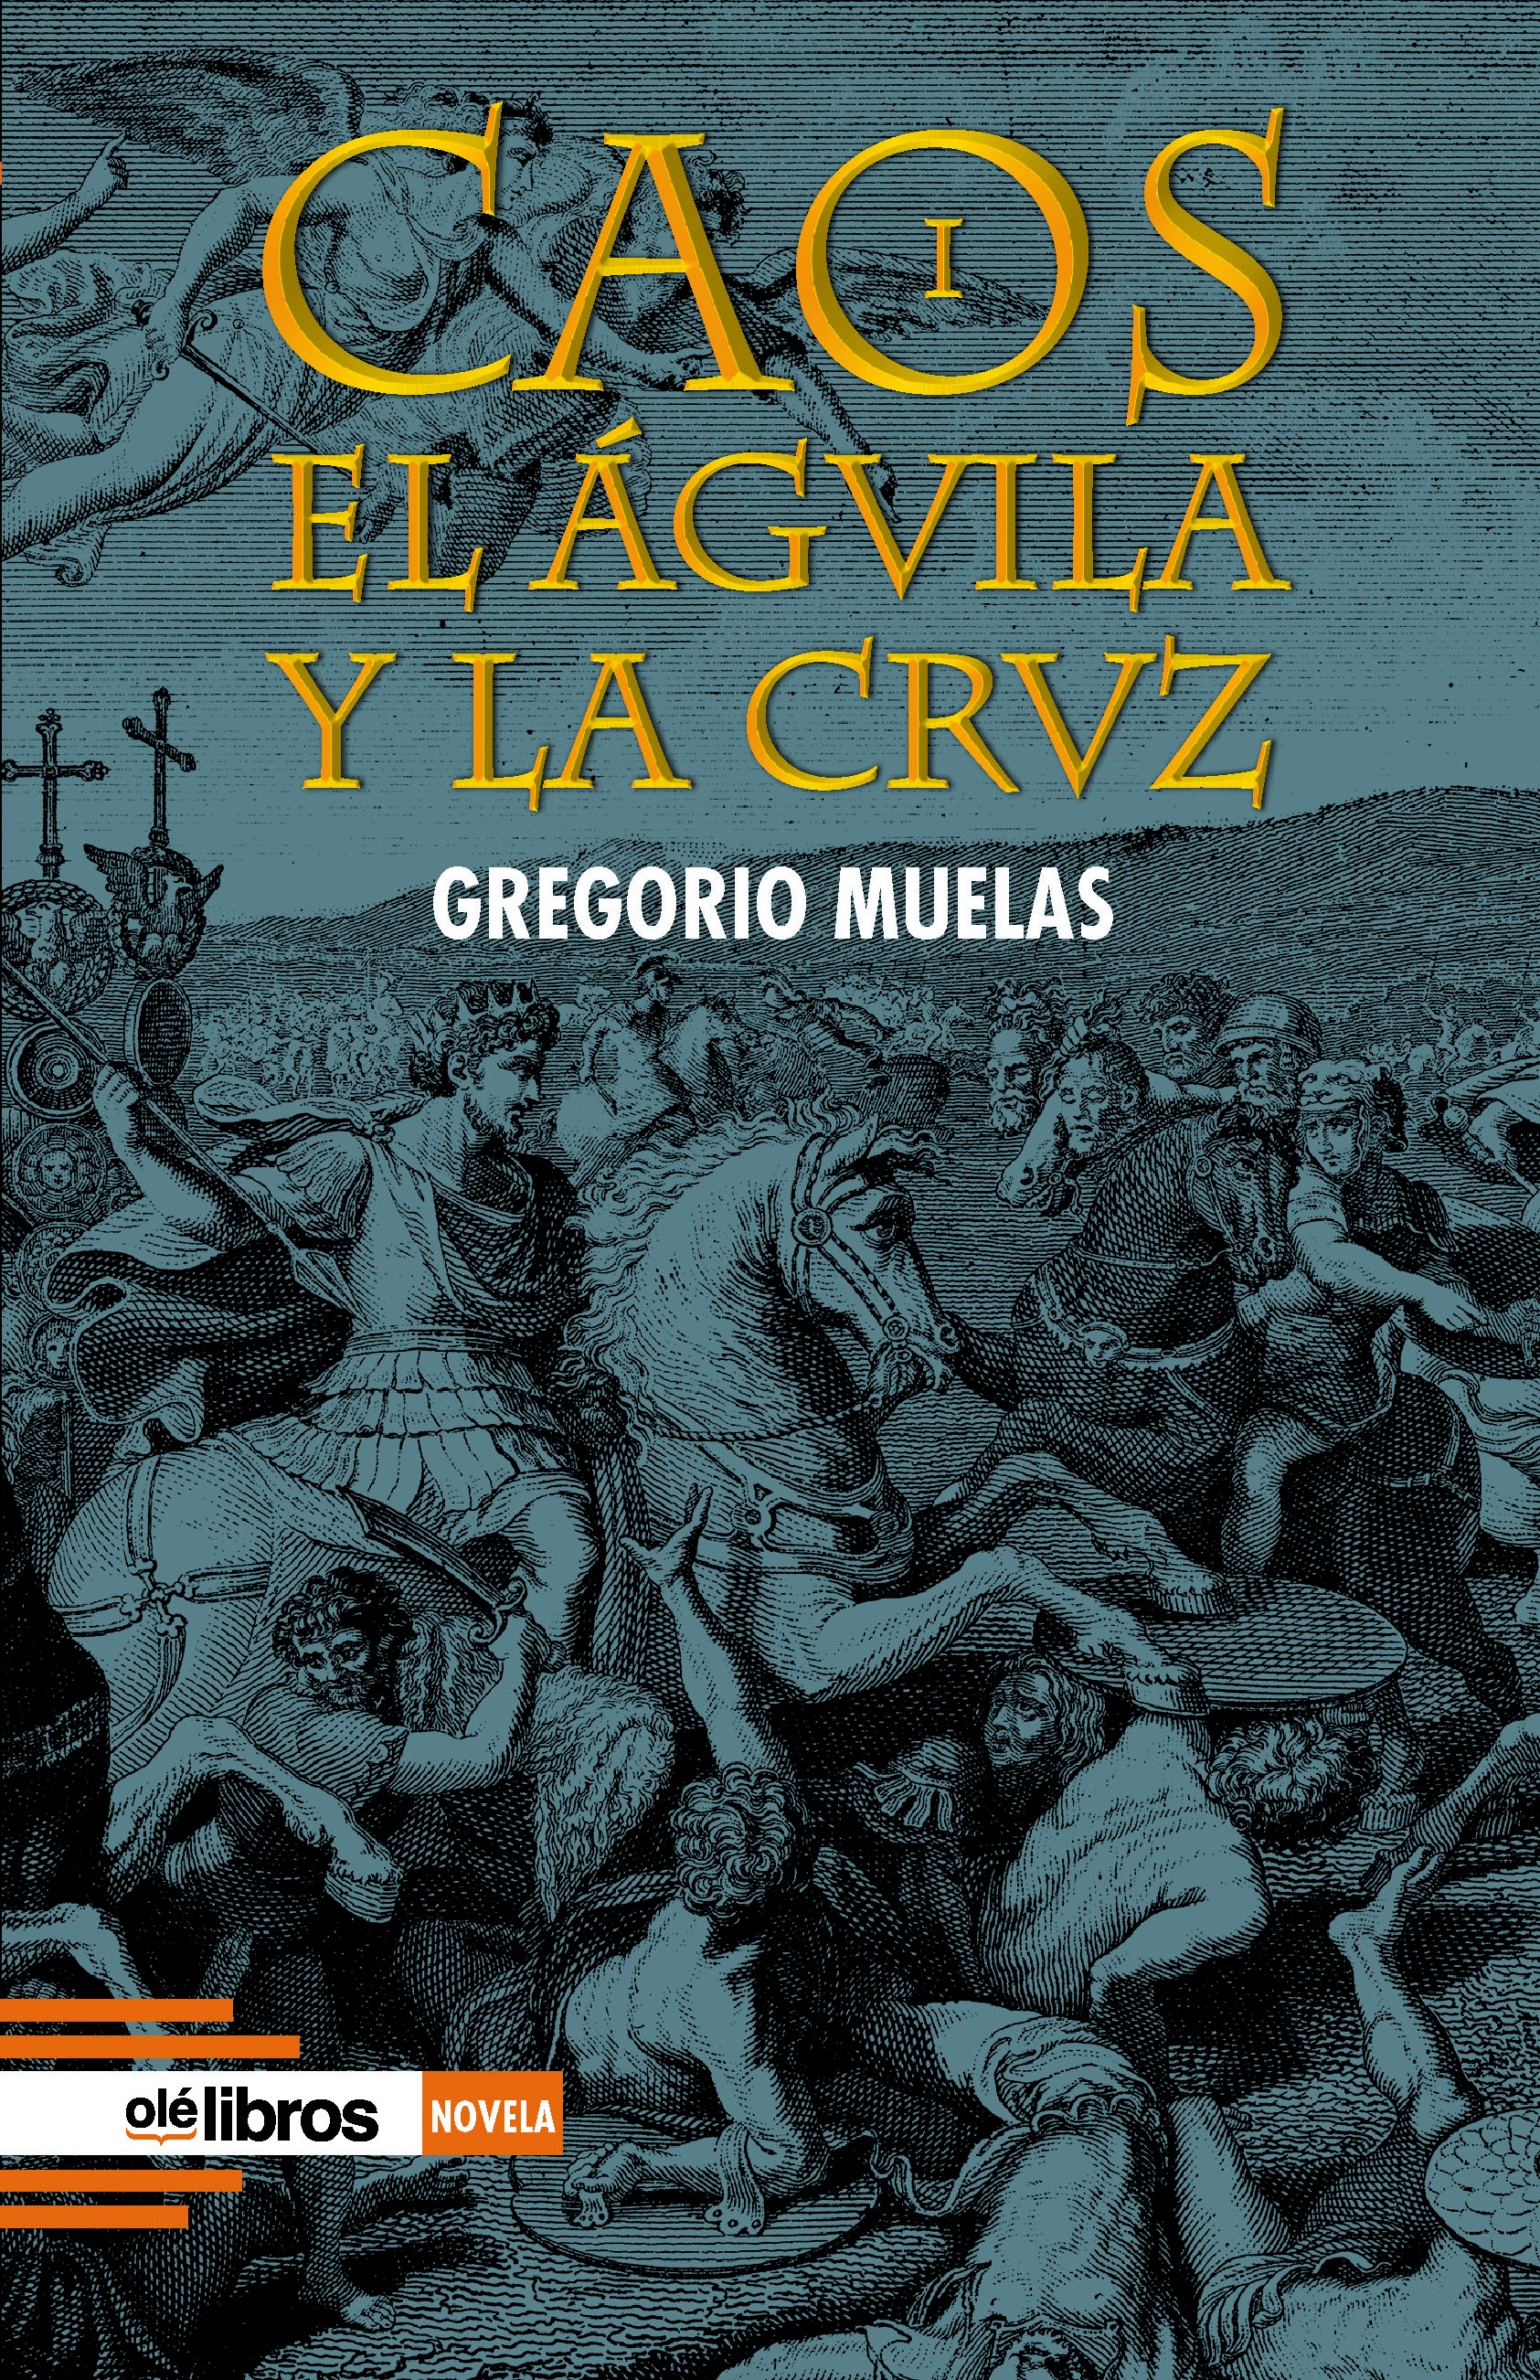 2544 - GREGORIO MUELAS - CAOS portada POLACA.indd